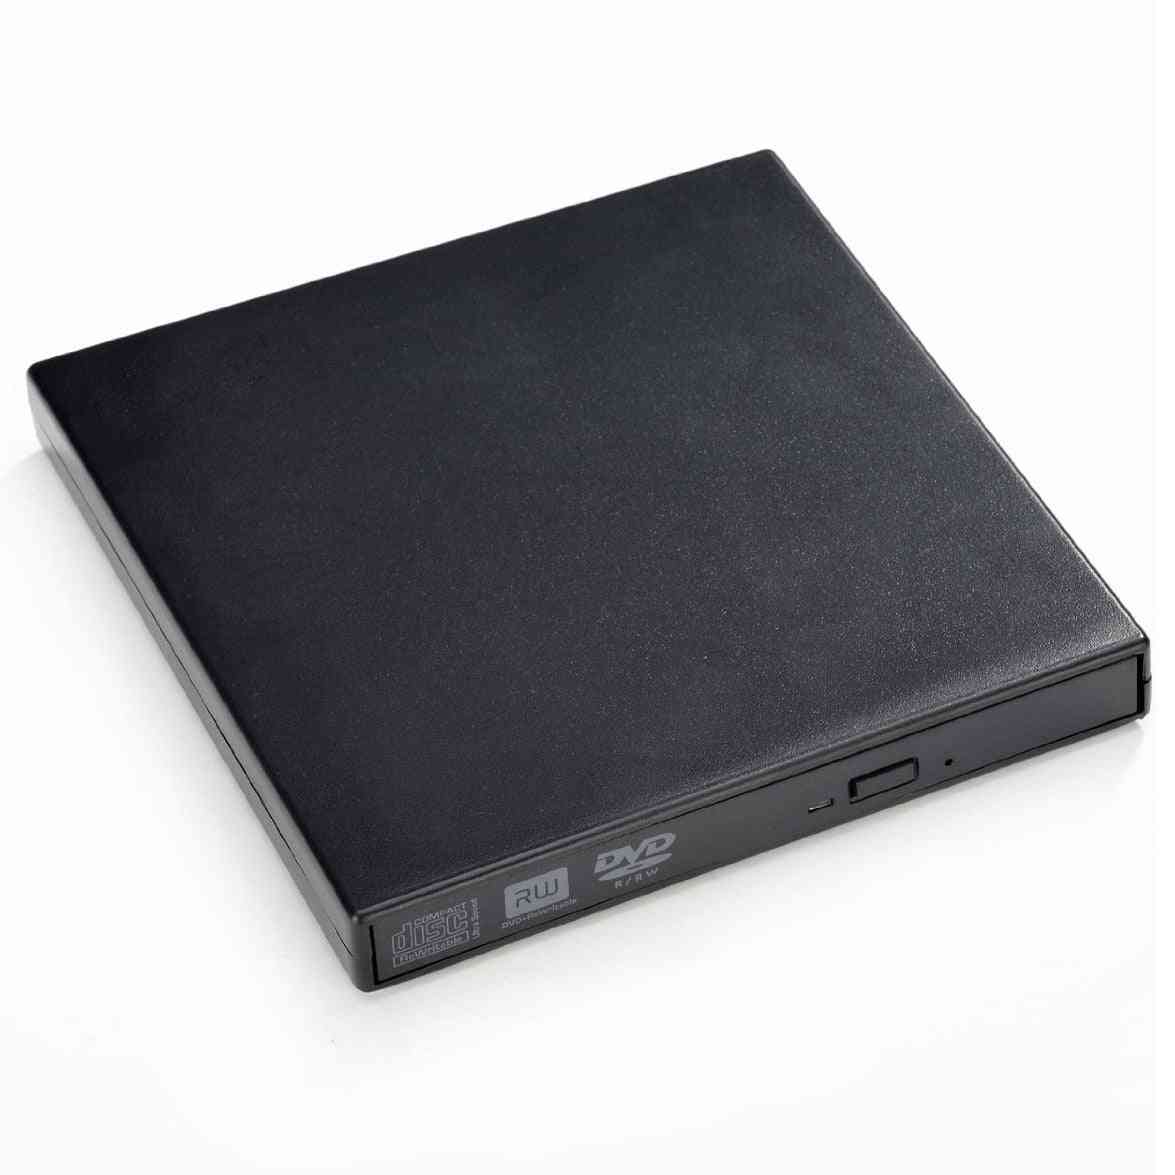 Tragbares schlankes externes USB-DVRDOM-Brenner-Schreibwerk für Laptop / Notebook / PC